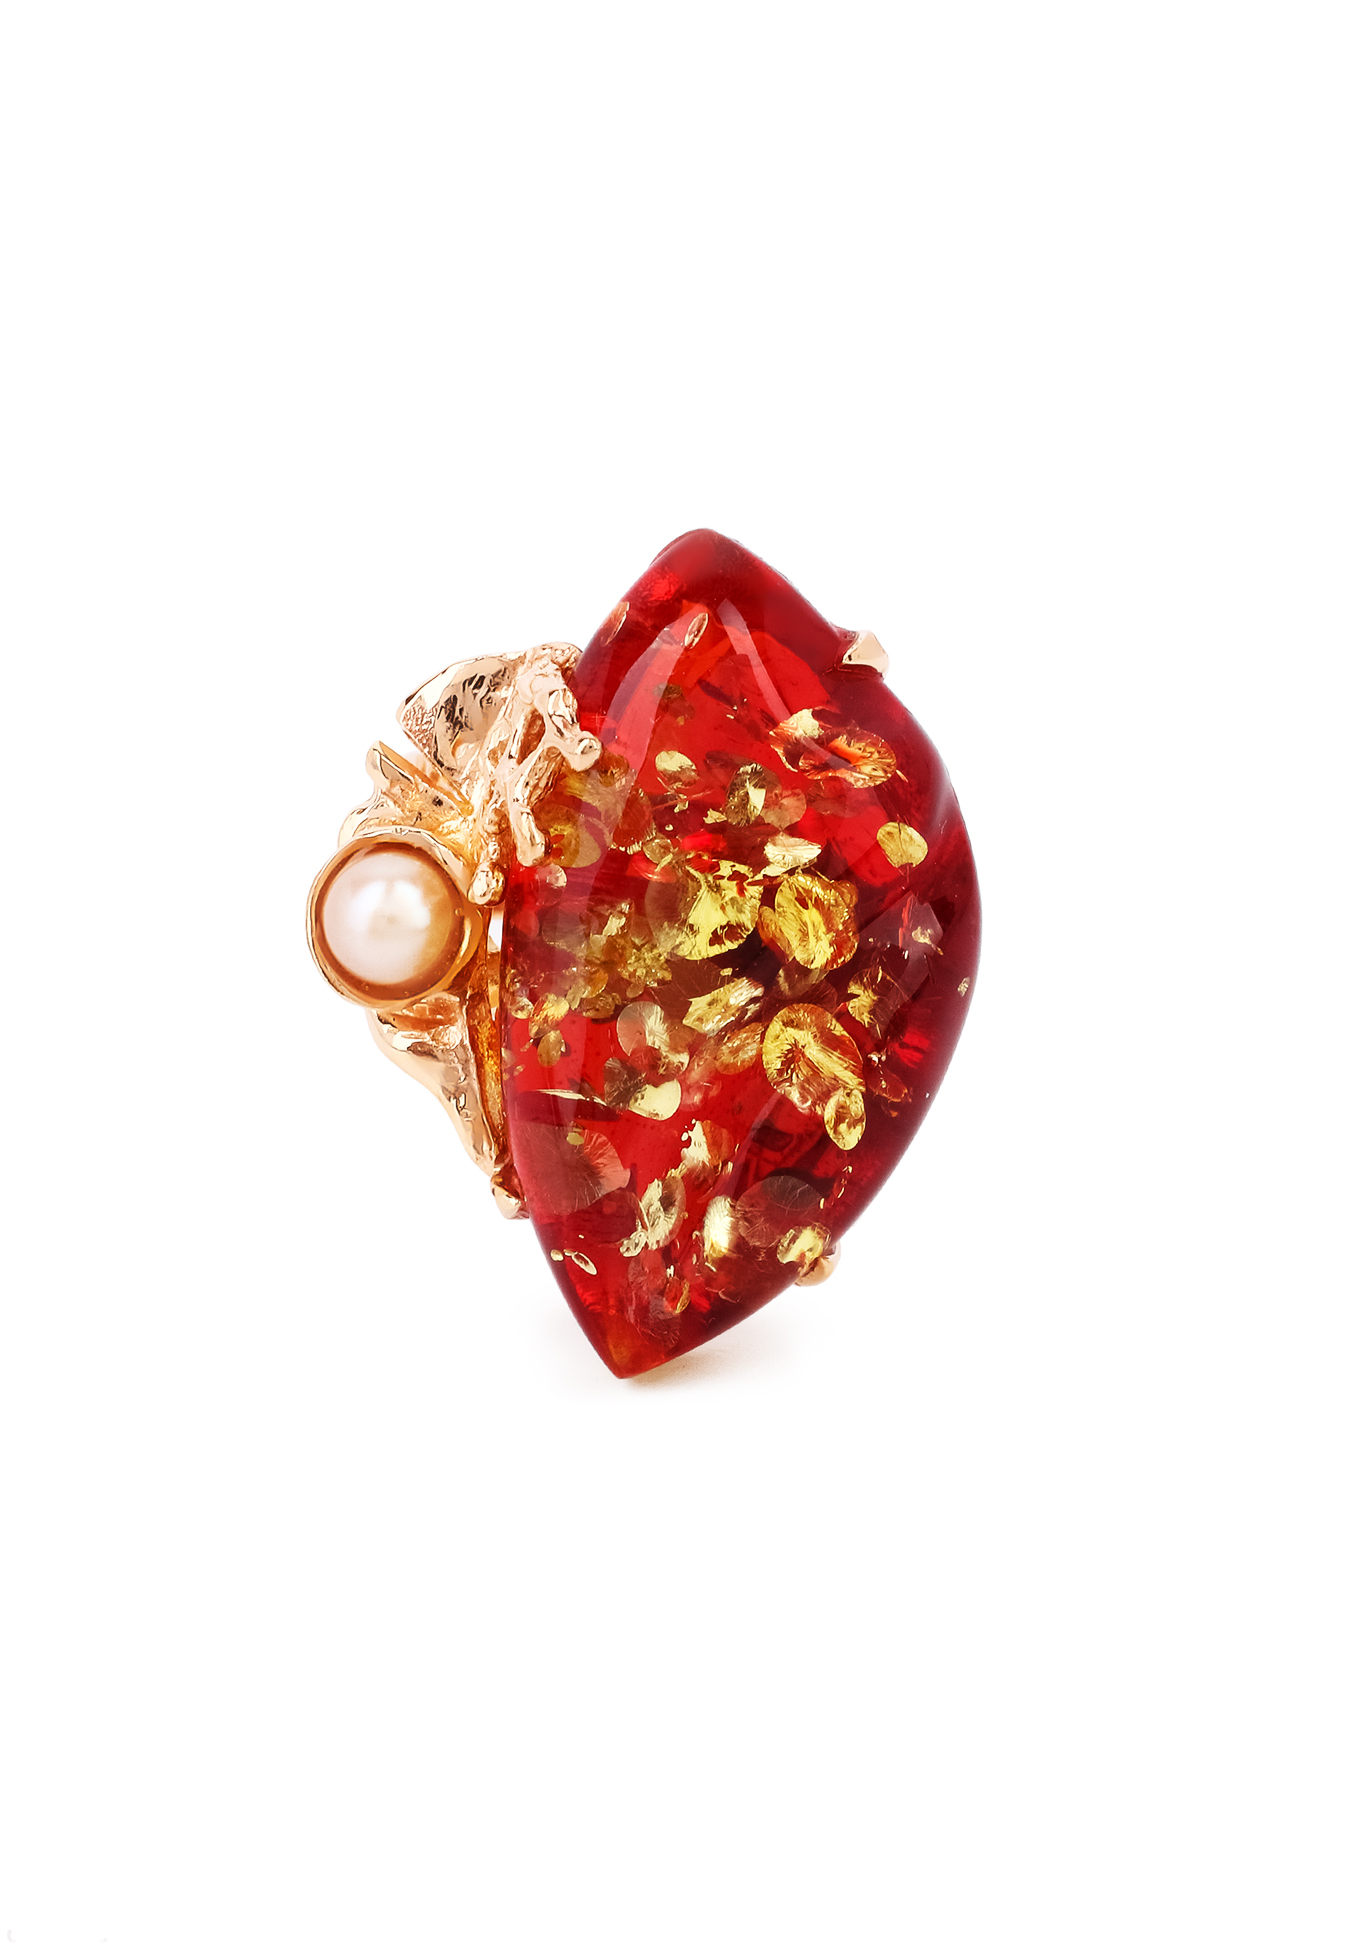 Кольцо серебряное "Чувственная грация" Янтарная волна, цвет красный перстень - фото 4